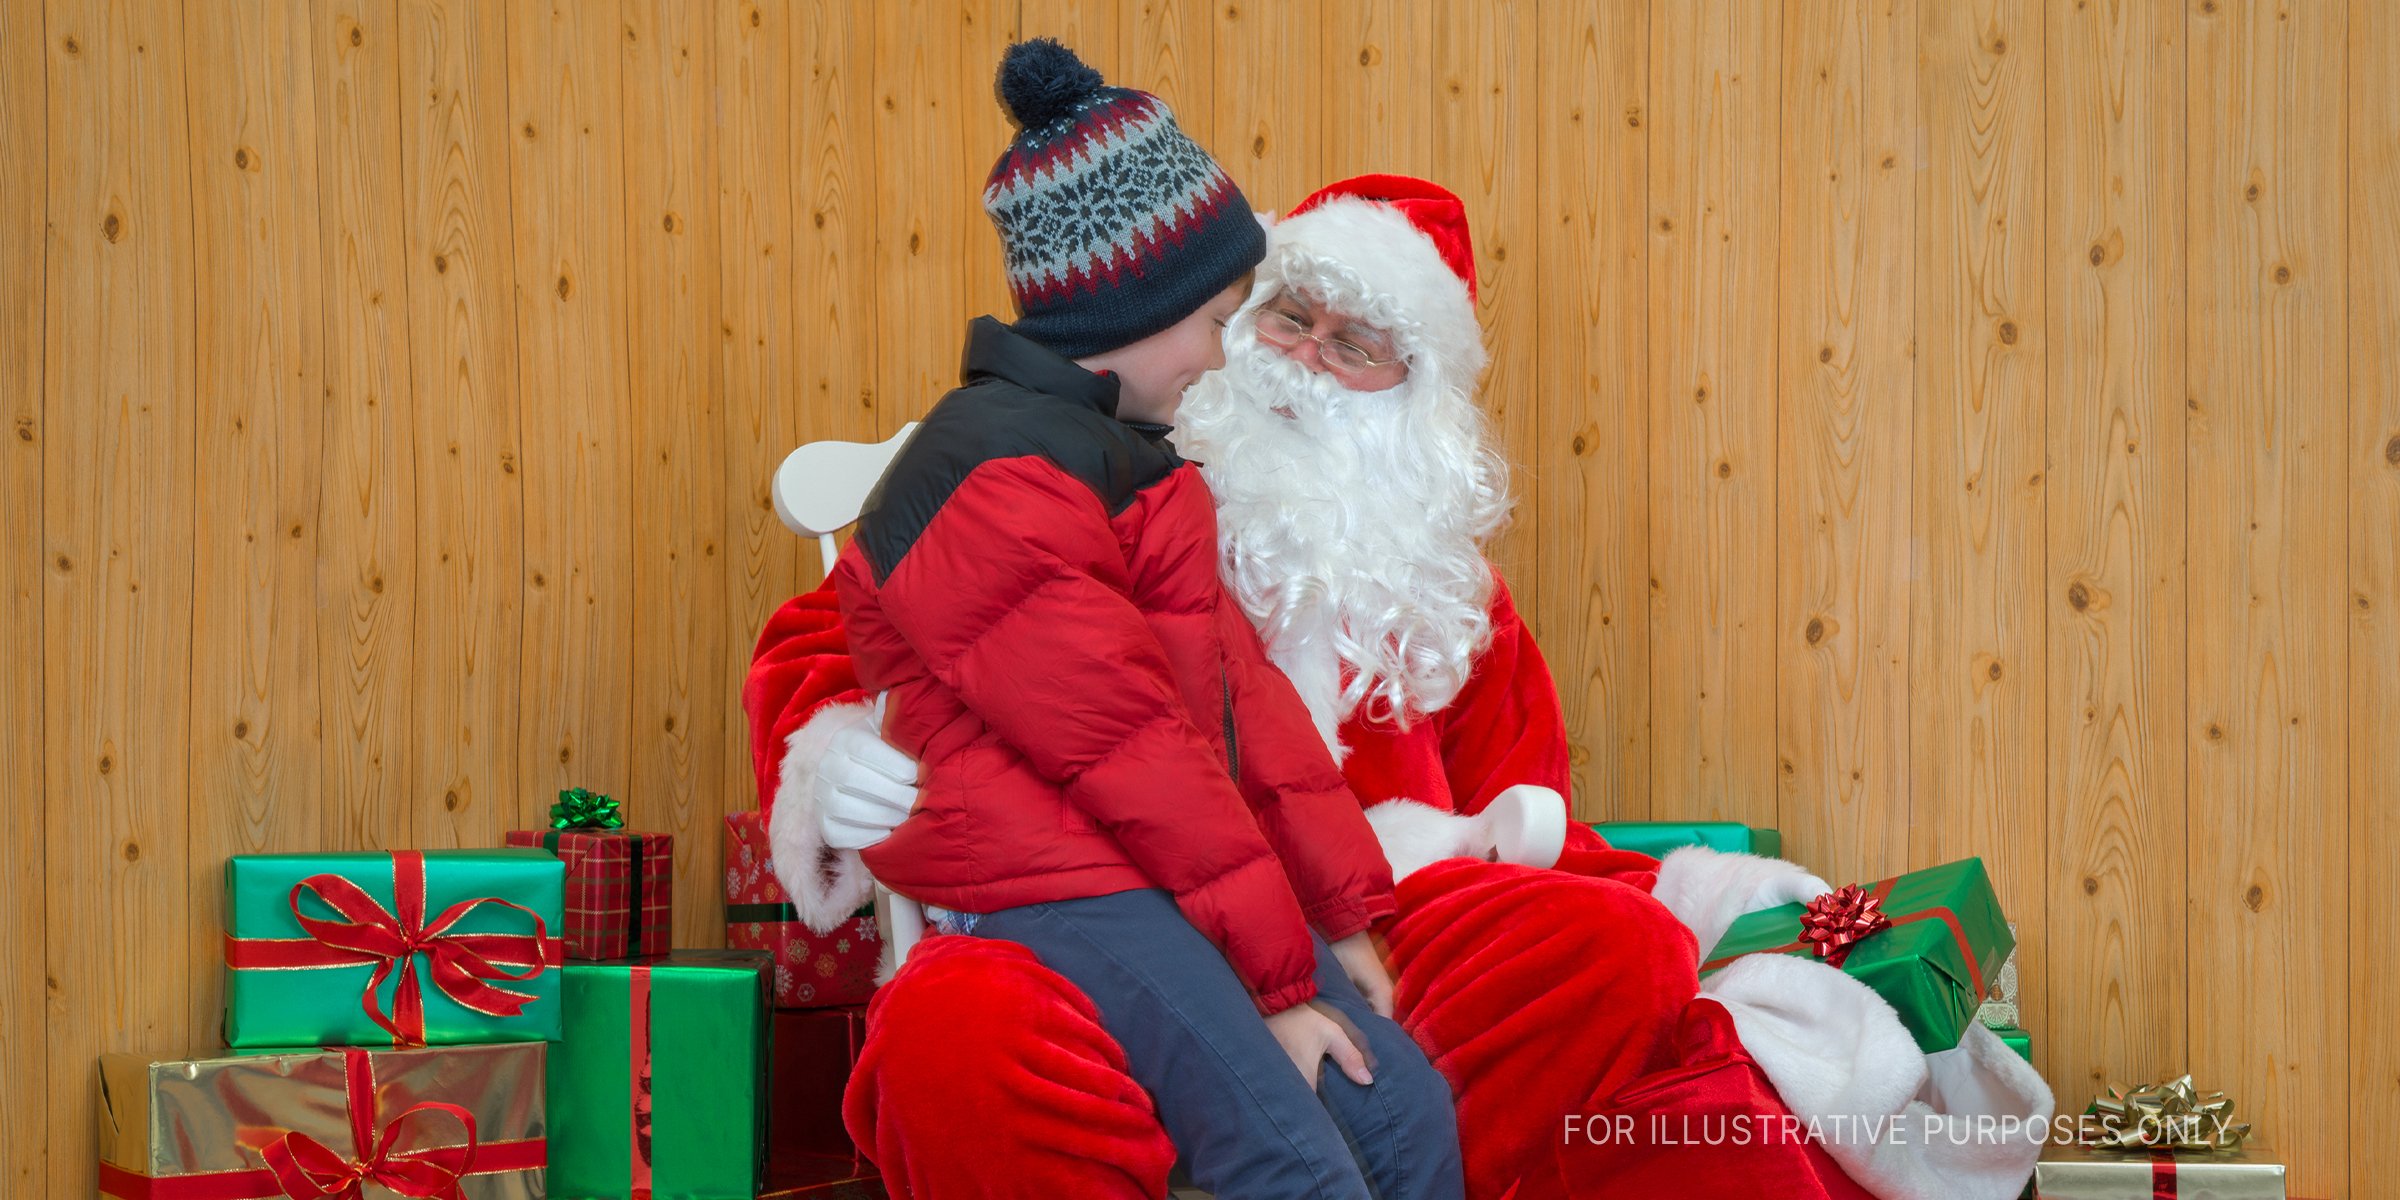 Der Weihnachtsmann sitzt mit einem Jungen zusammen | Quelle: Getty Images